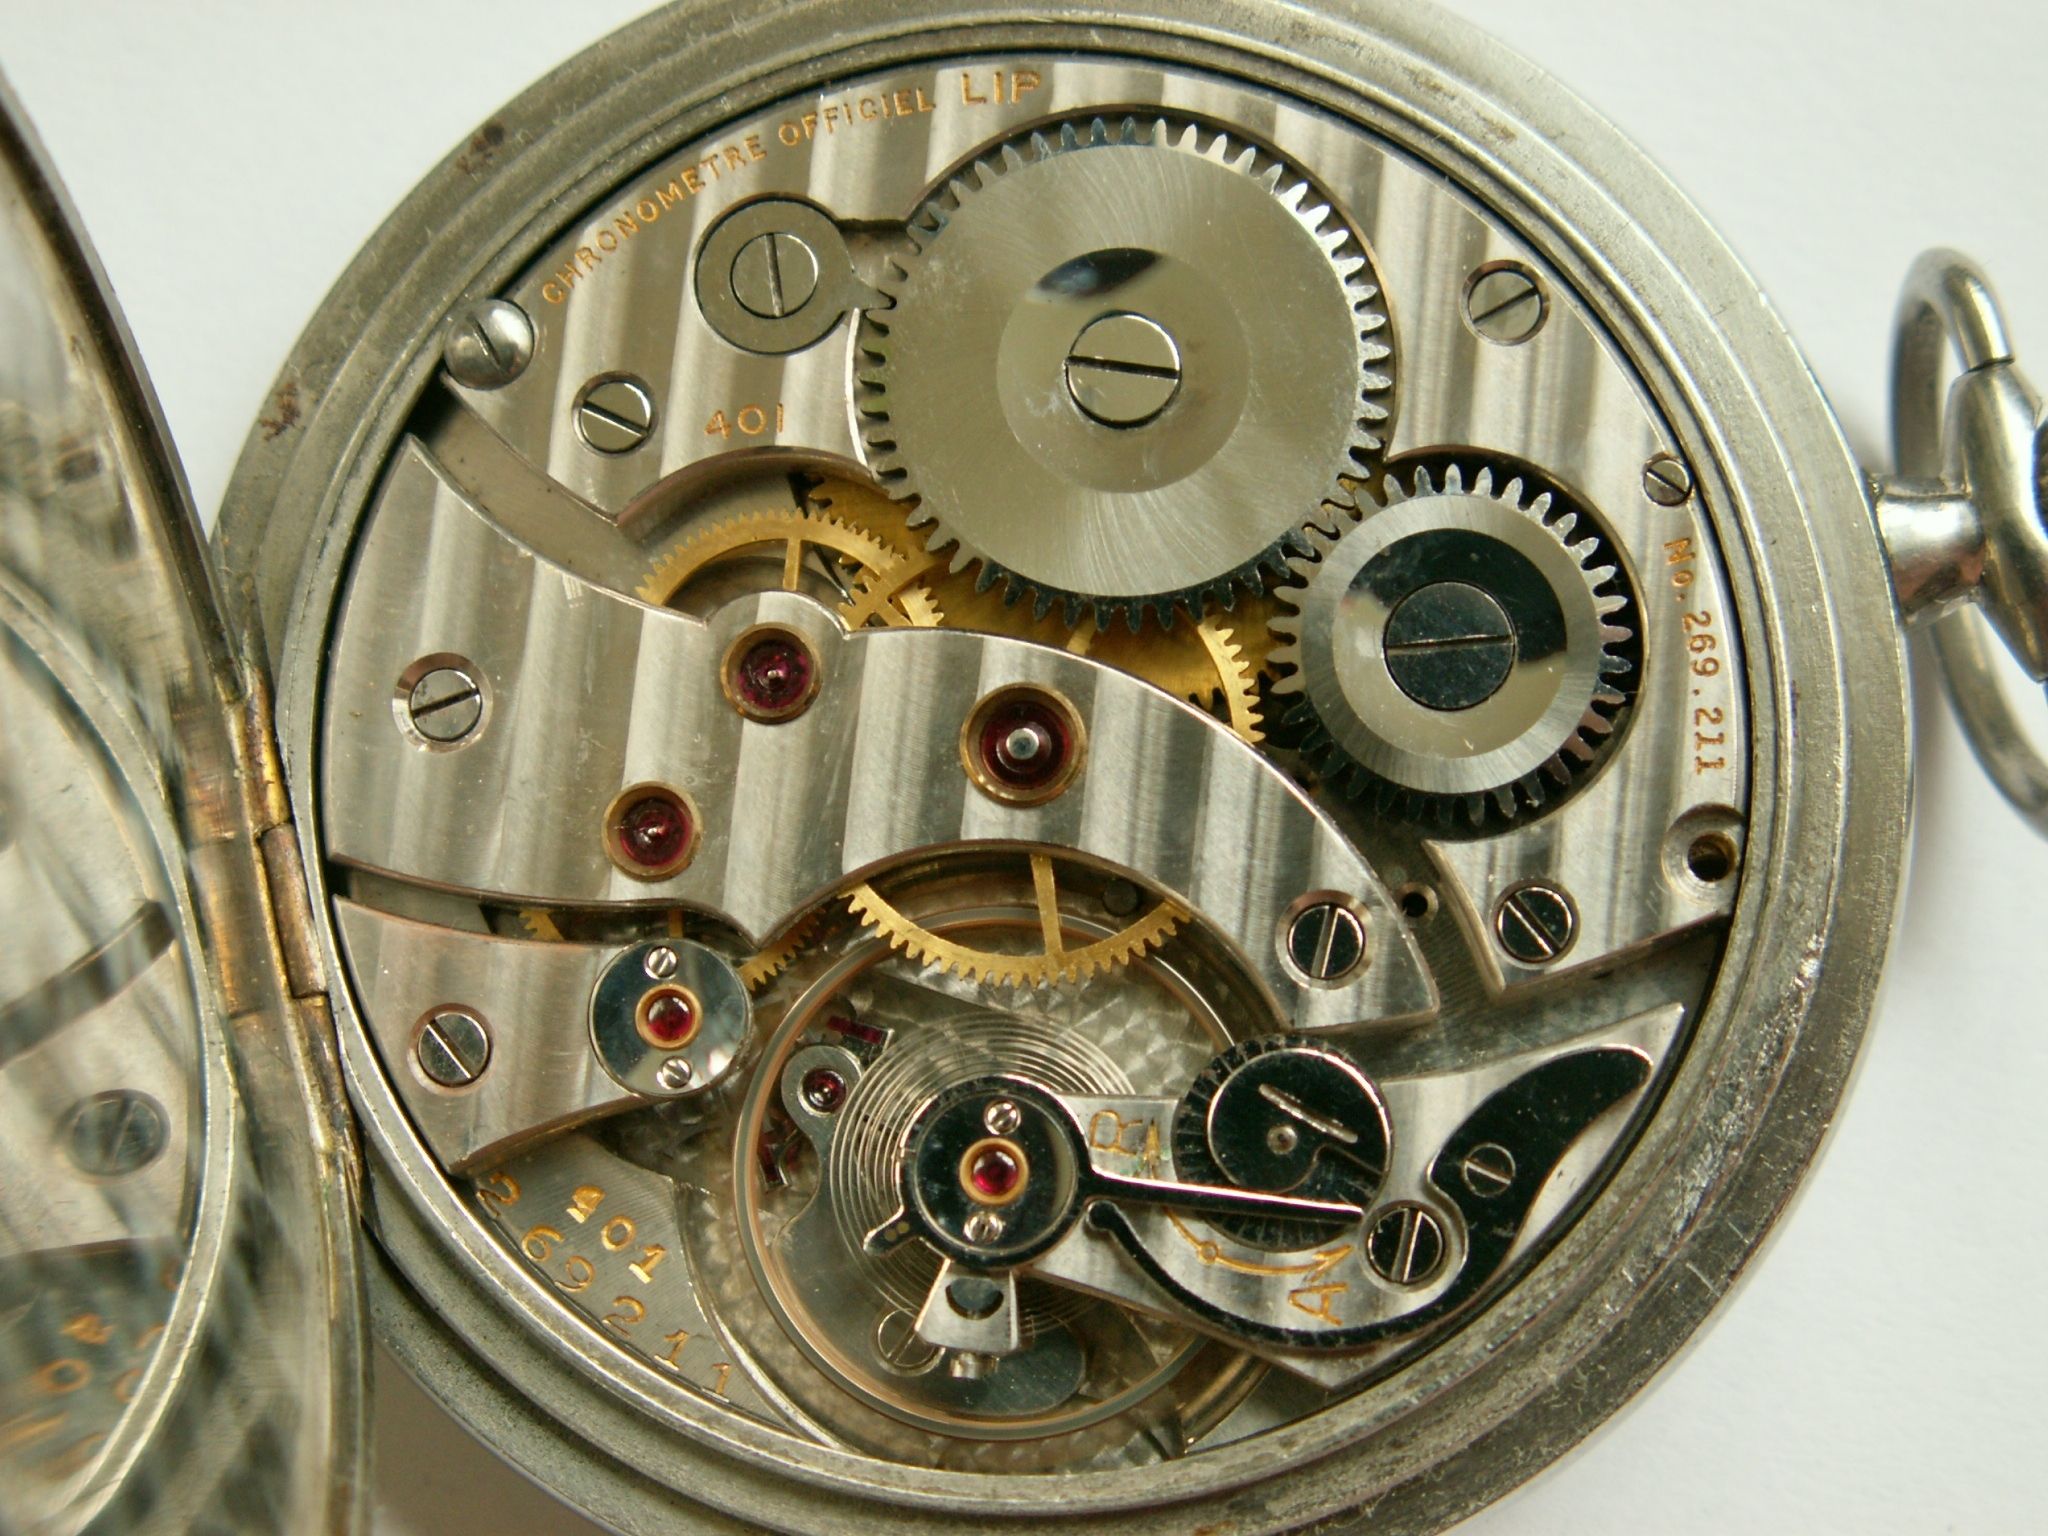 baan herhaling single Chronometre officiel LIP - Vintage Horlogeforum - Horlogeforum.nl - het  forum voor liefhebbers van horloges